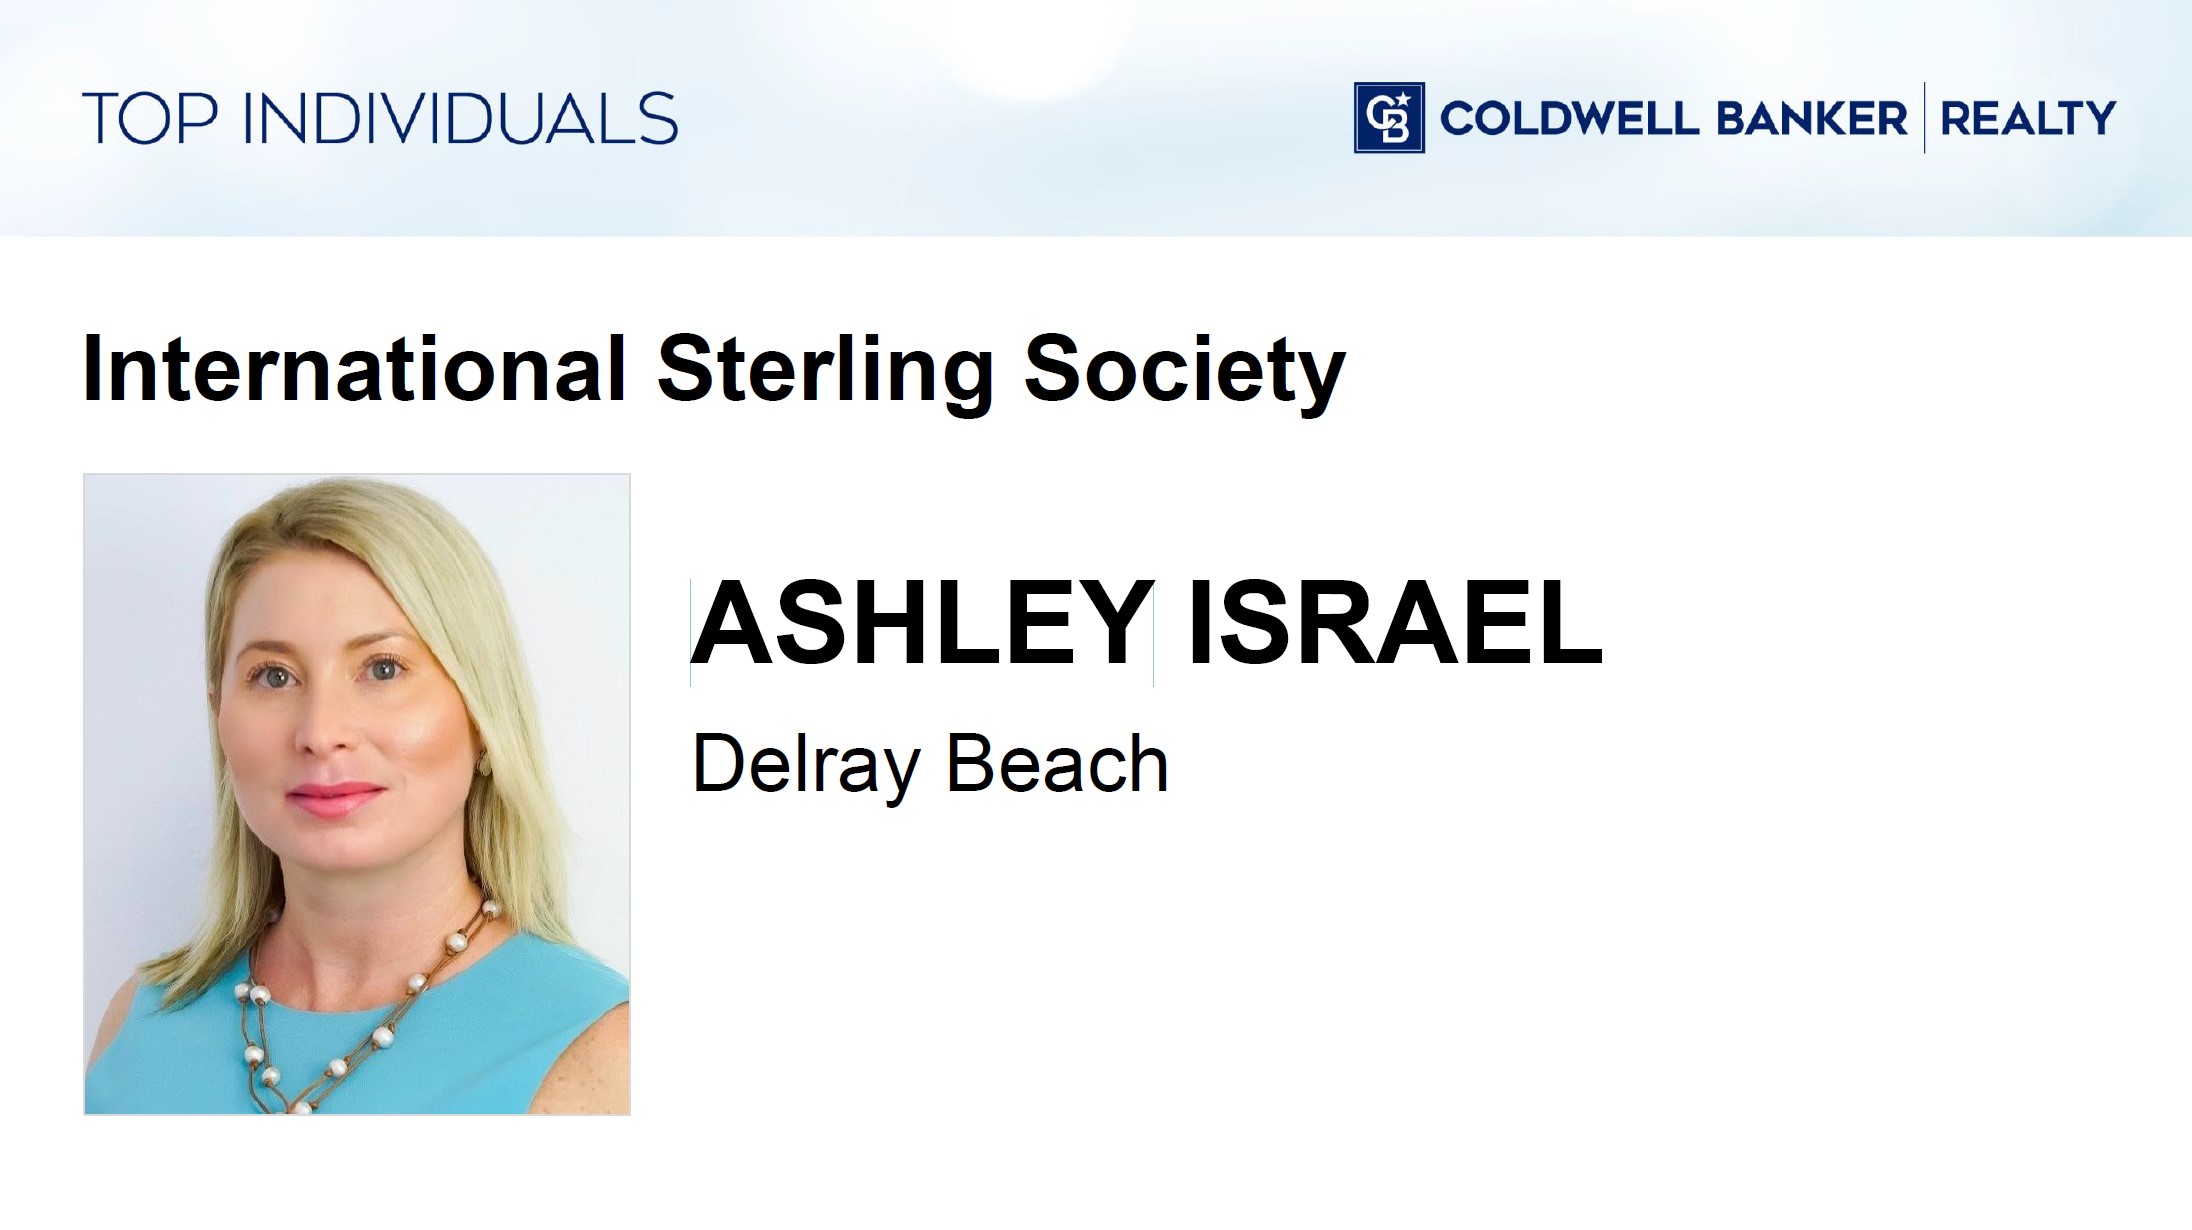 Ashley Israel award